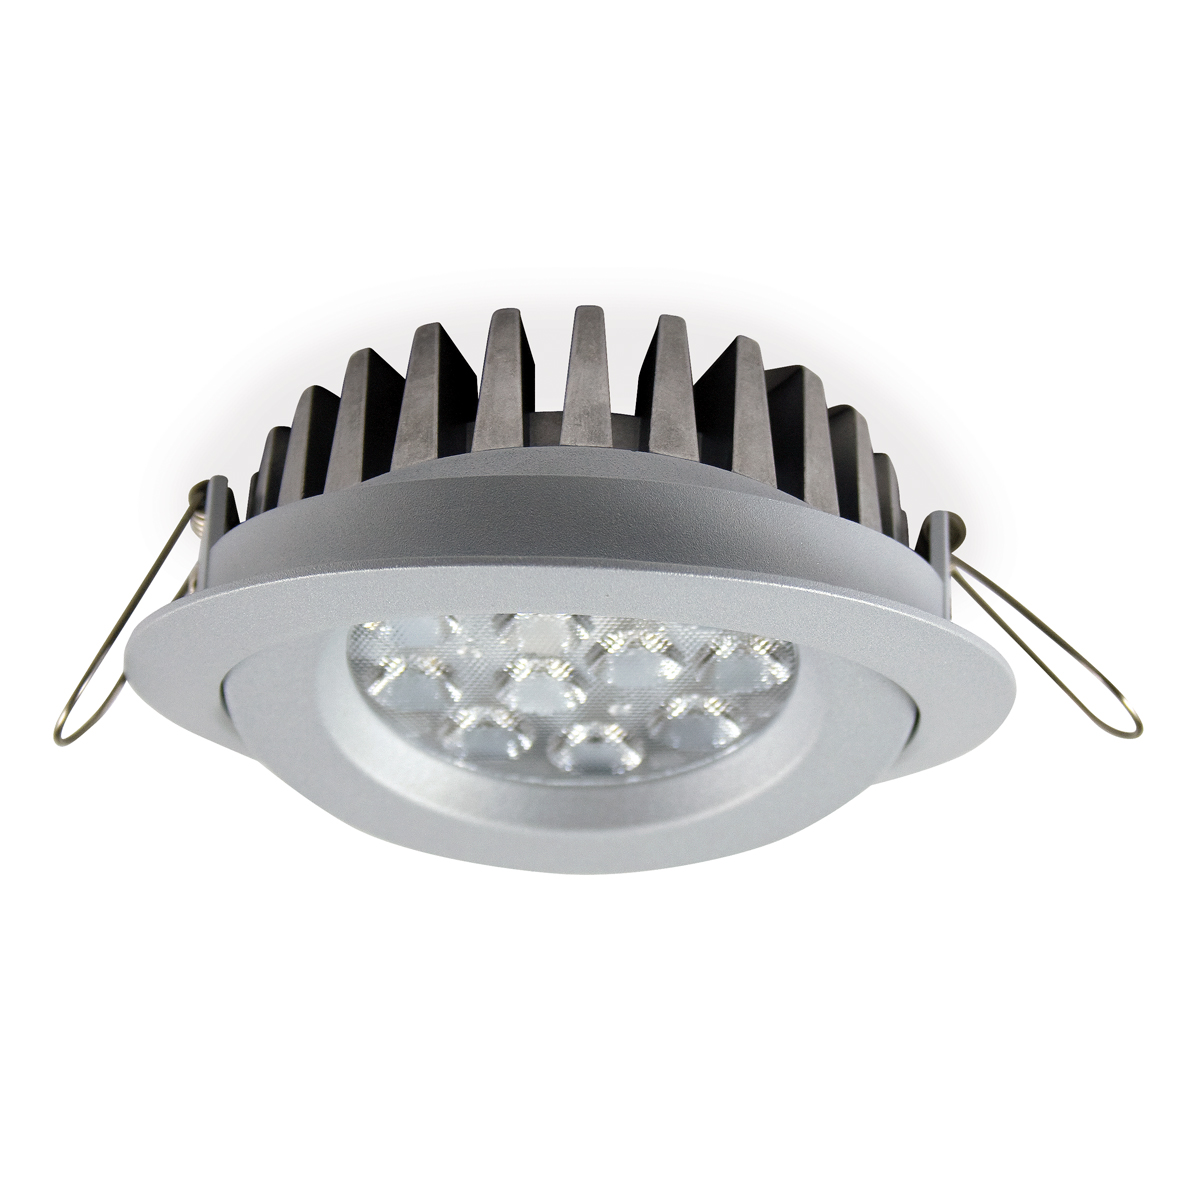 Tais - Downlight led basculante y orientable 360º redondo con lampara